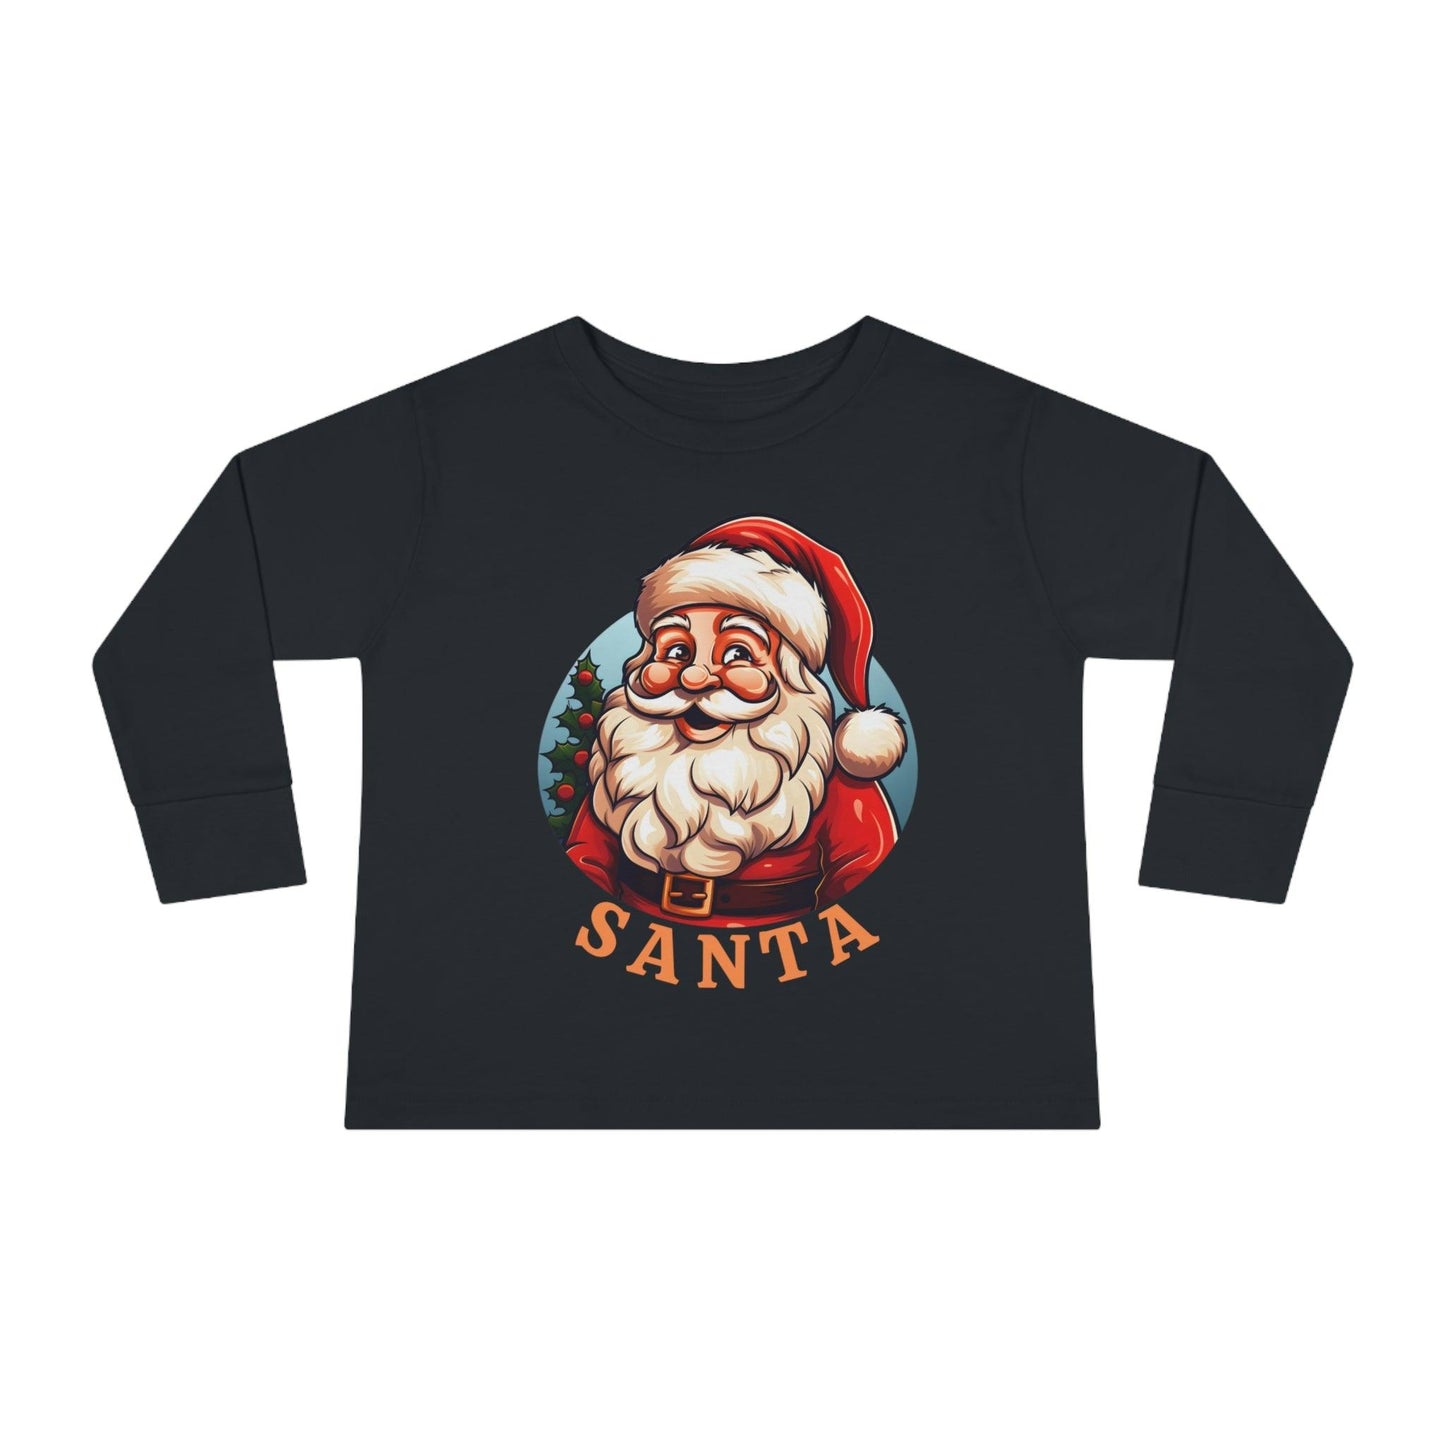 Kids Santa Shirt For Christmas Shirt for Kids Christmas Outfit for Kids - Giftsmojo